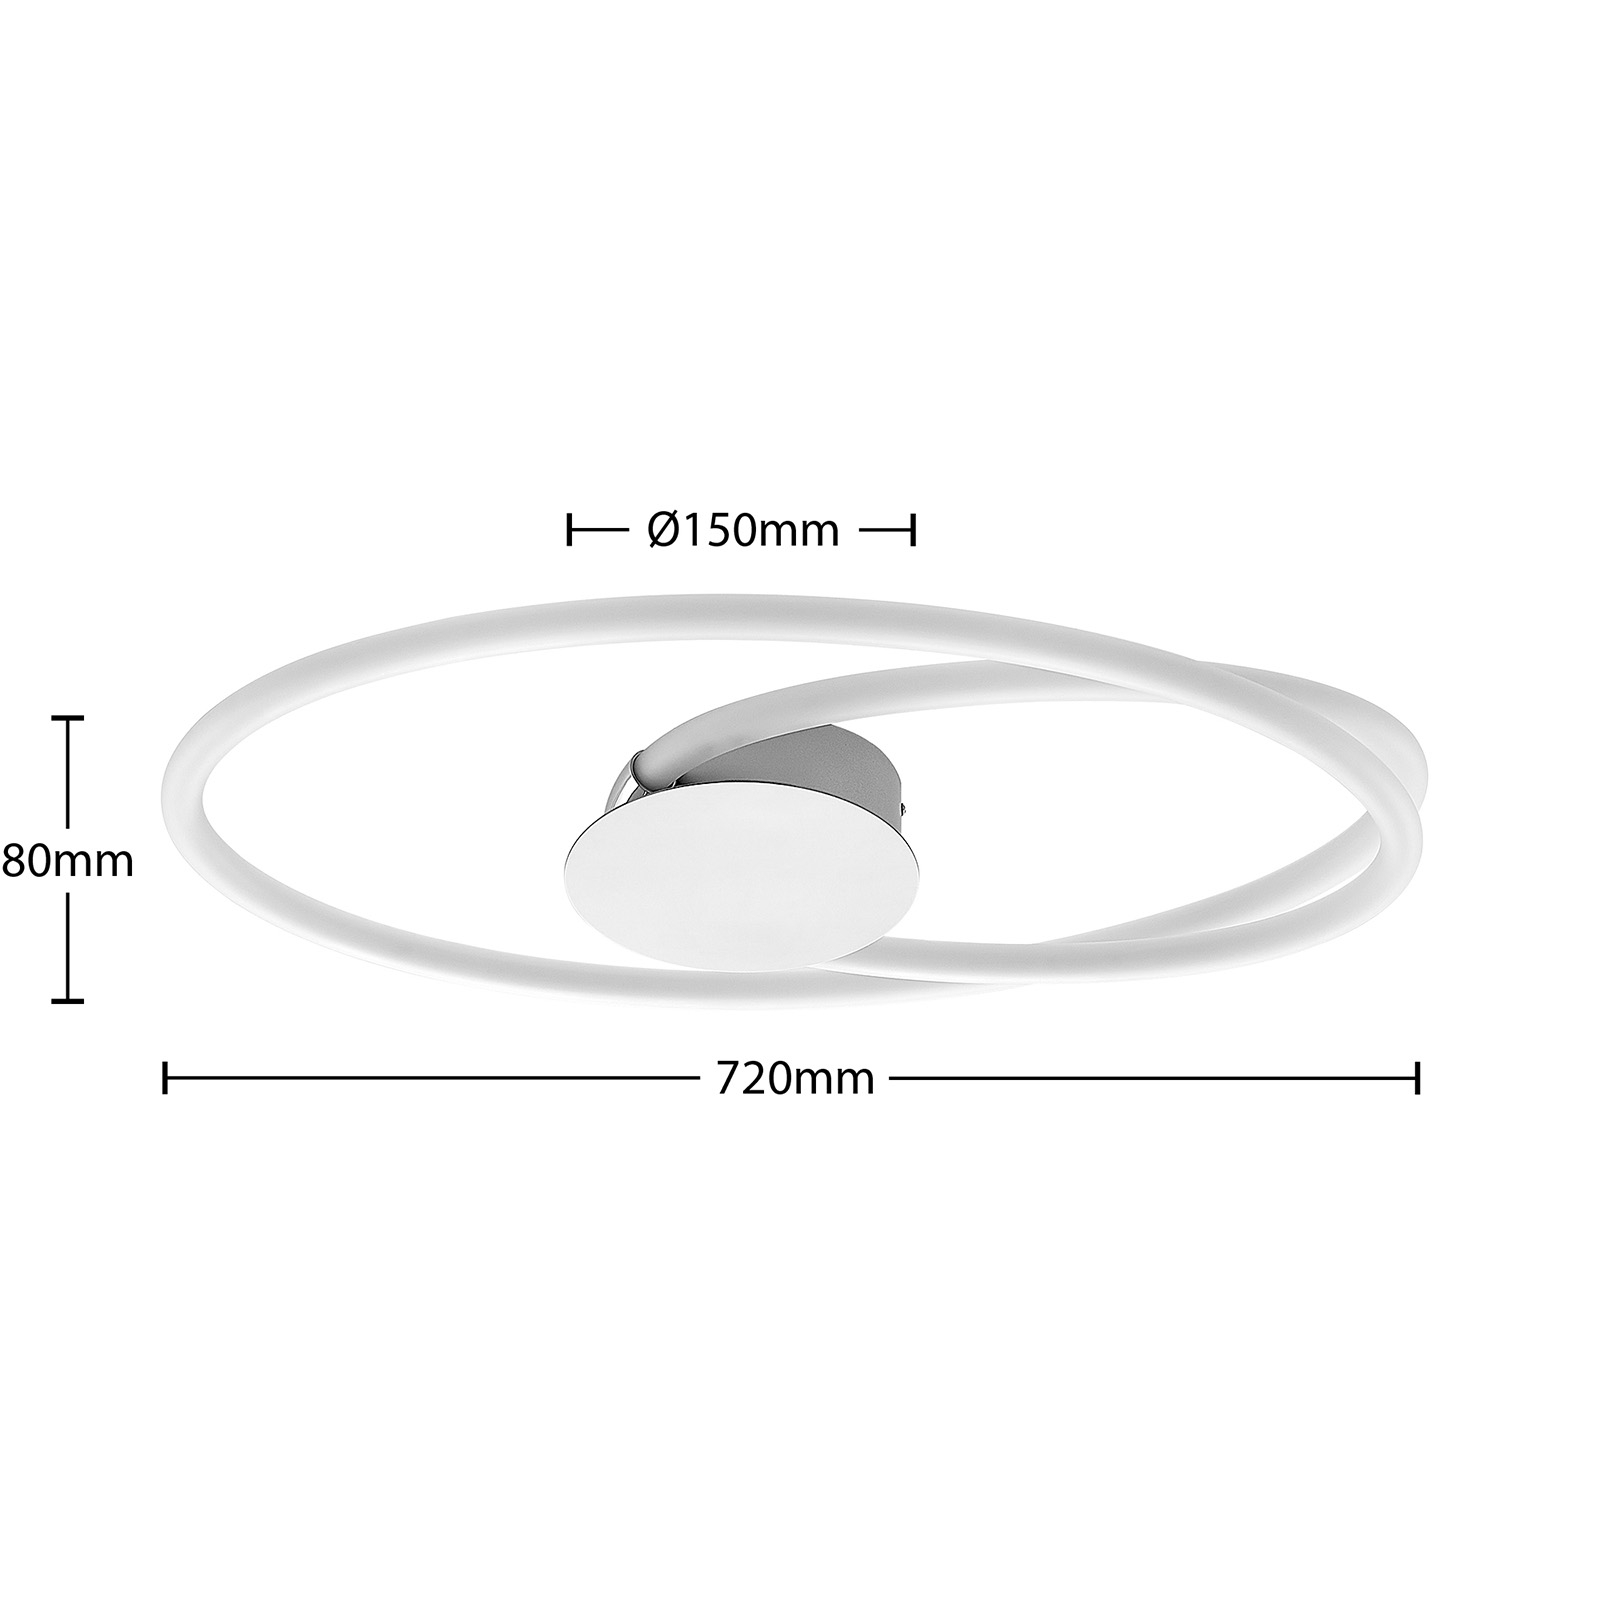 Lucande Ovala LED-Deckenleuchte, 72 cm